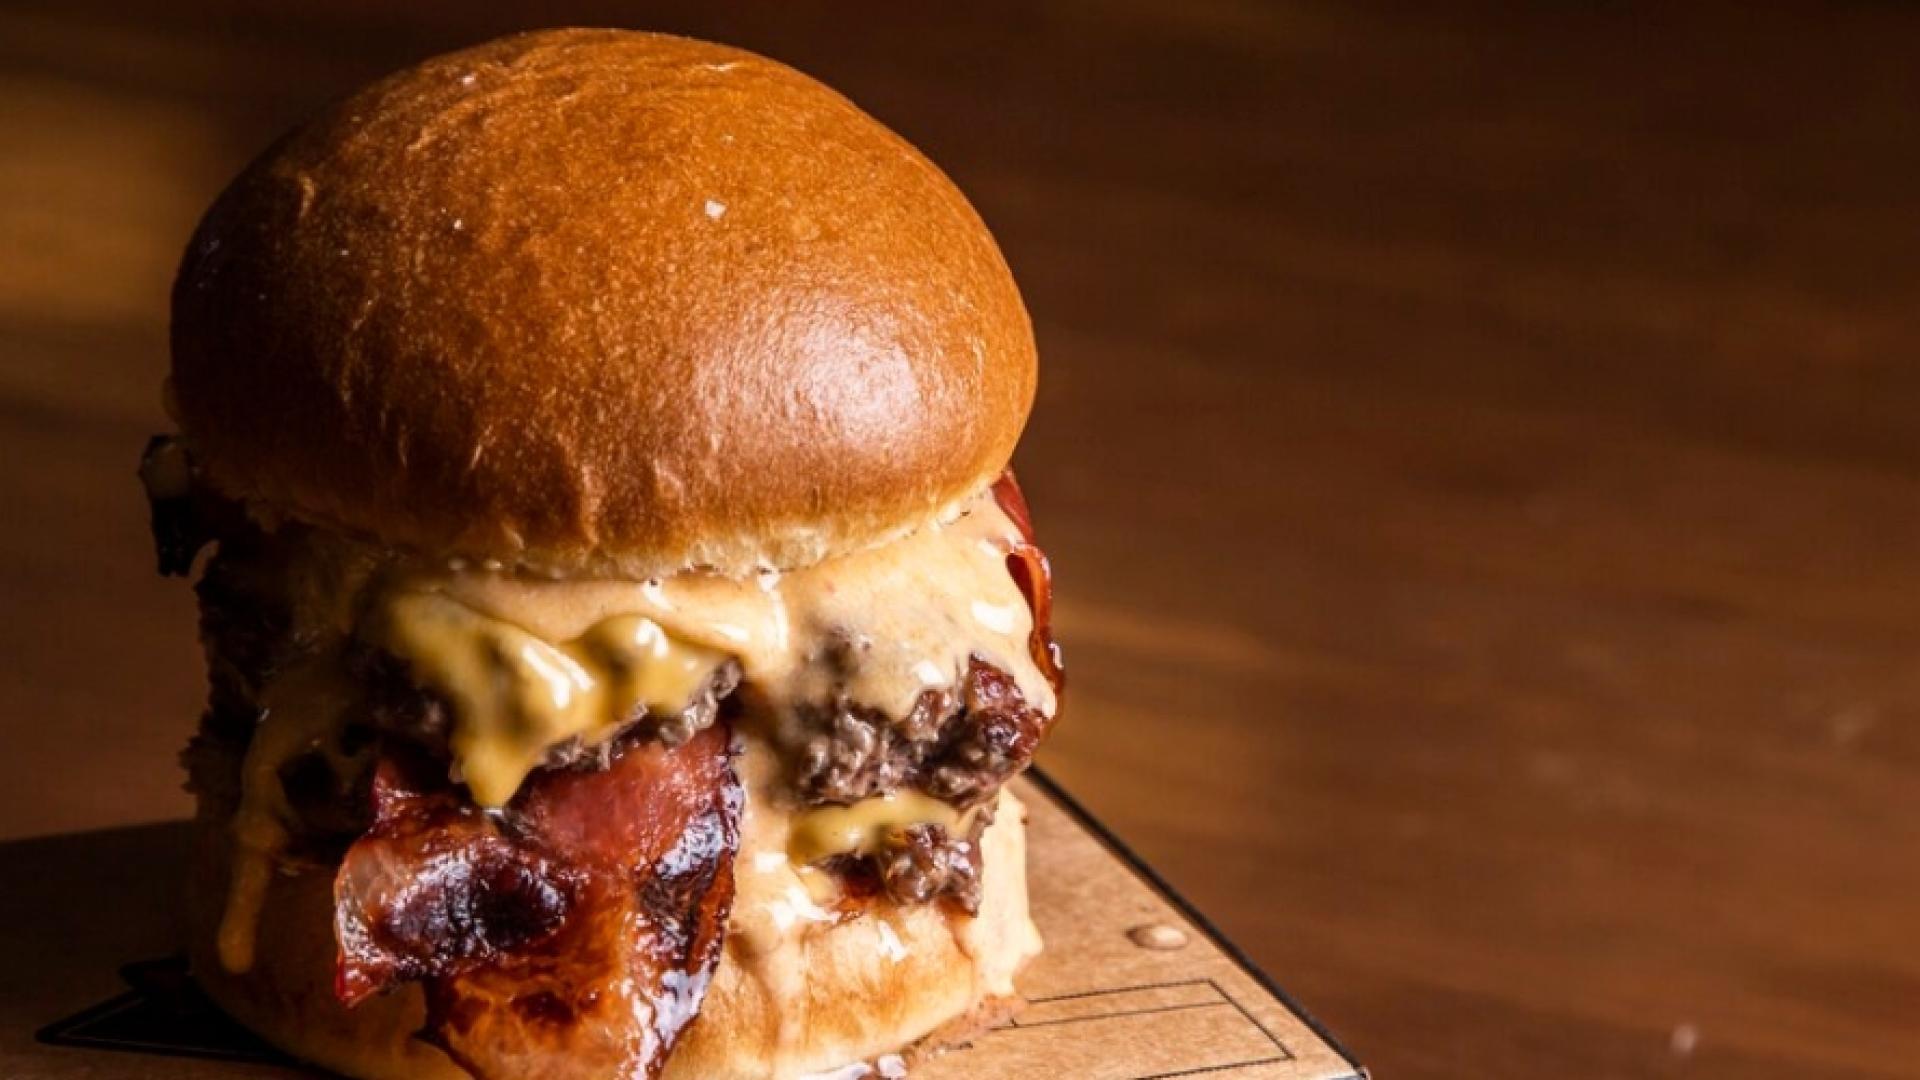 una de las mejores hamburguesas de españa está en castilla y león: carne de la finca, chorizo caramelizado y mayonesa reducida con vino dop cebreros